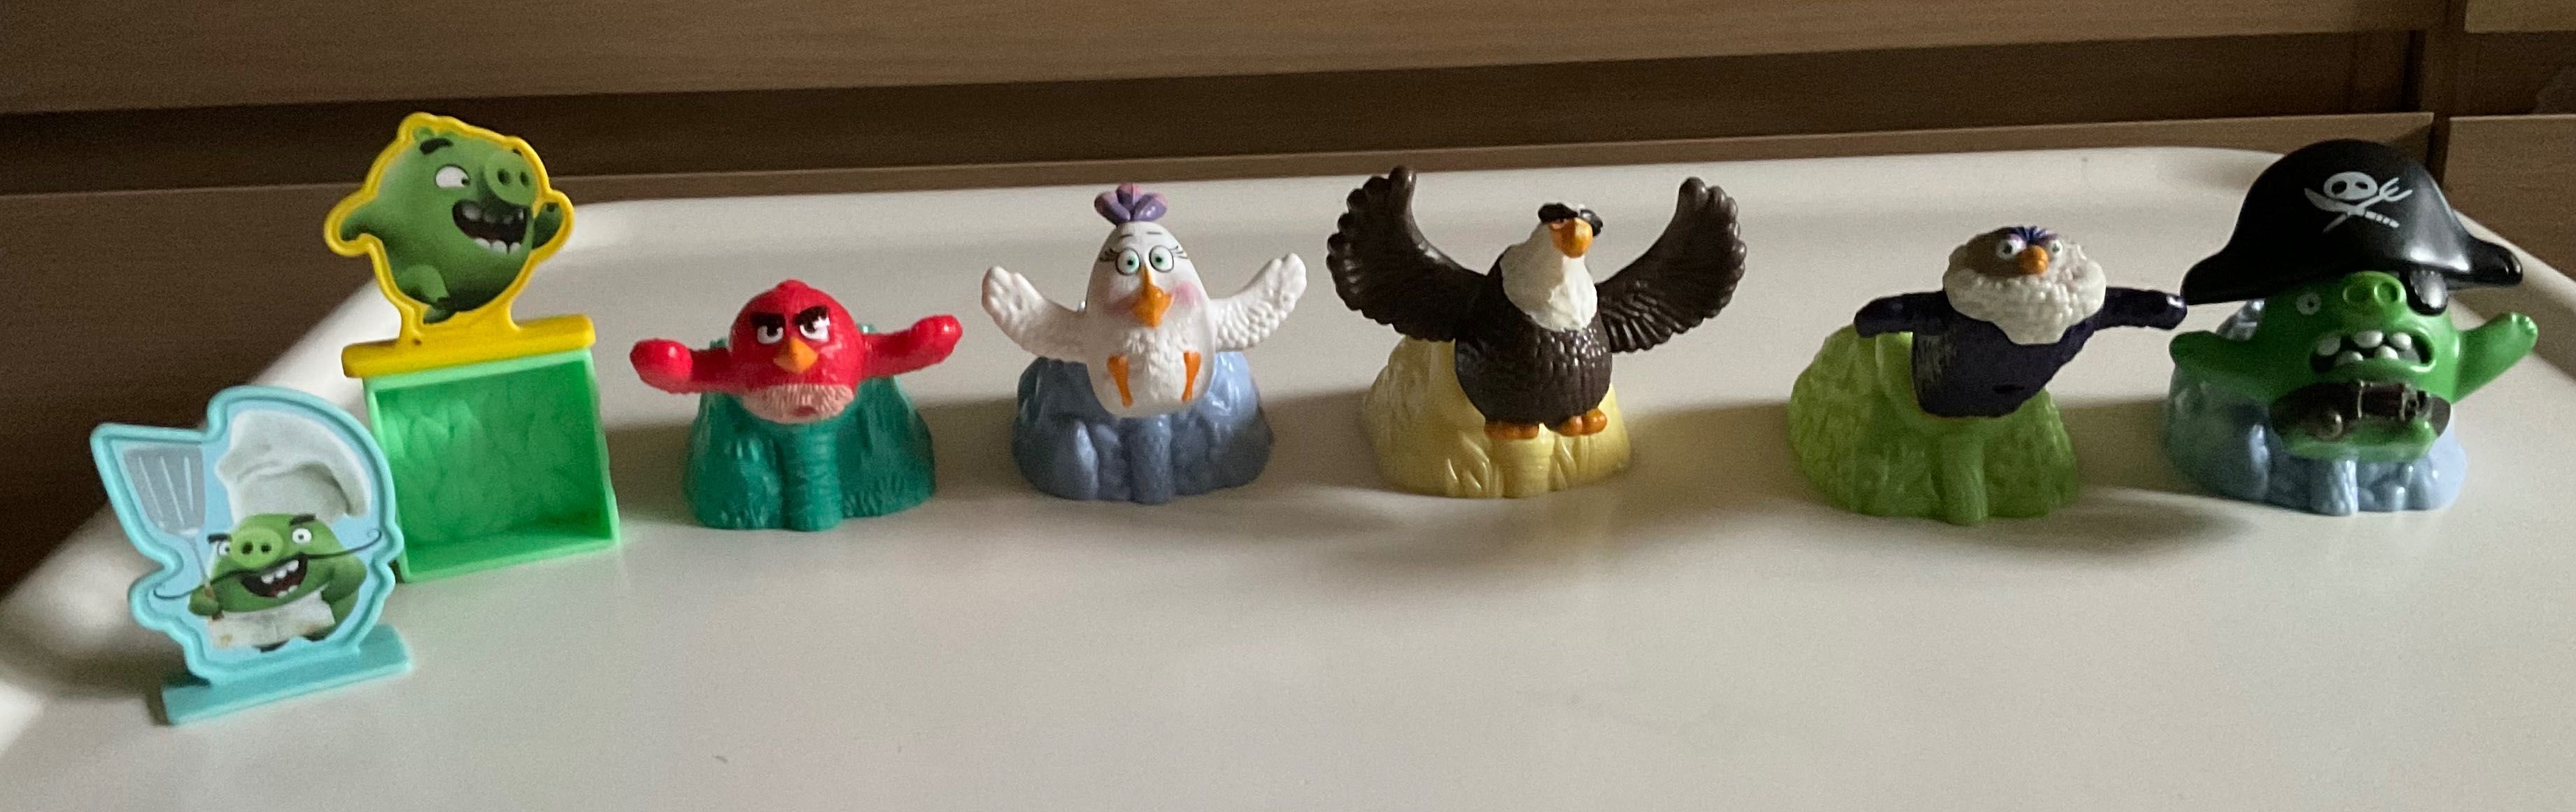 ANGRY BIRDS zabawki z McDonald's 2016